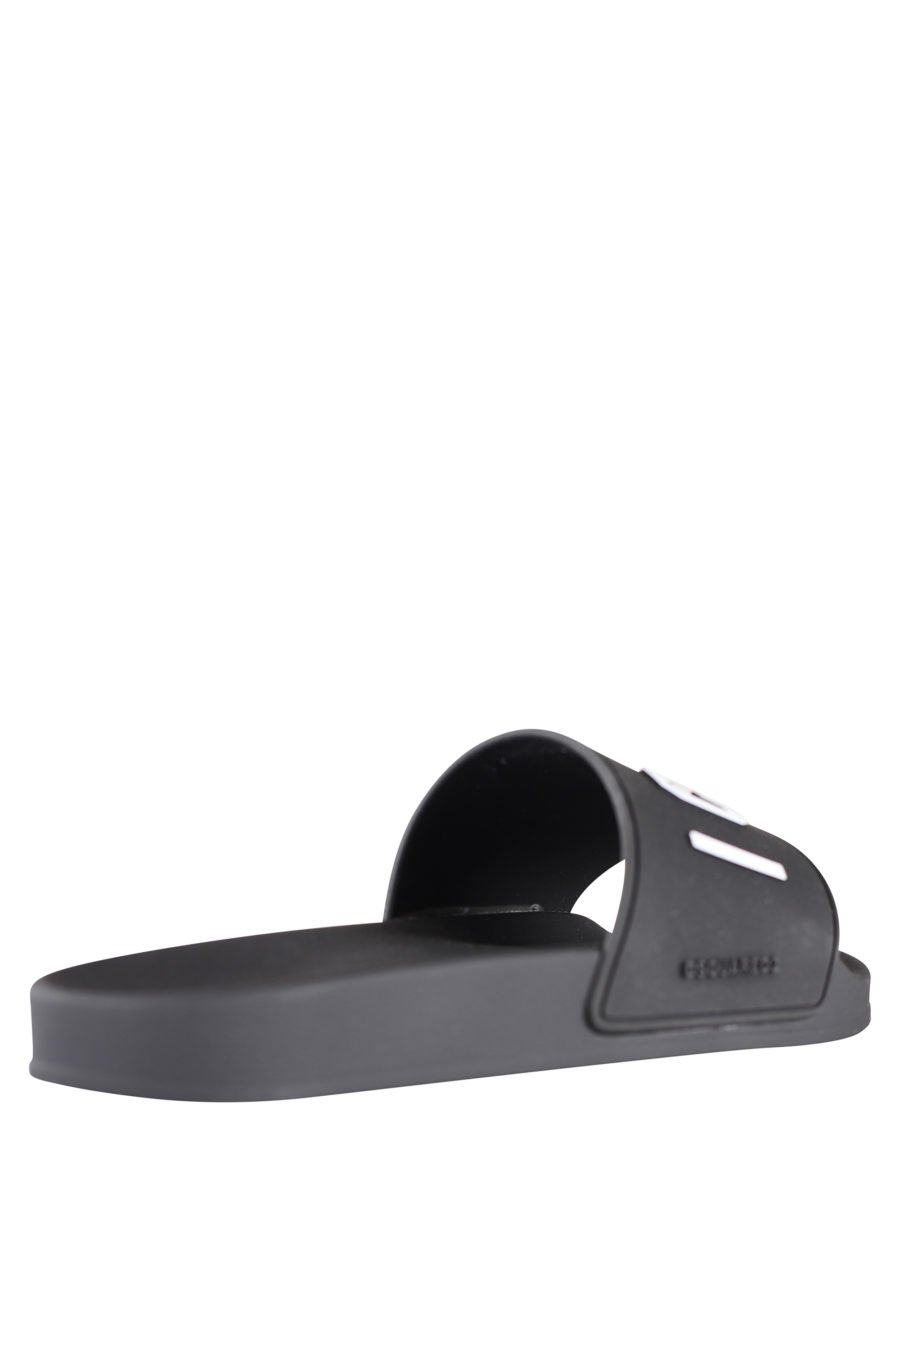 Black flip flops with white "icon" logo - IMG 9947